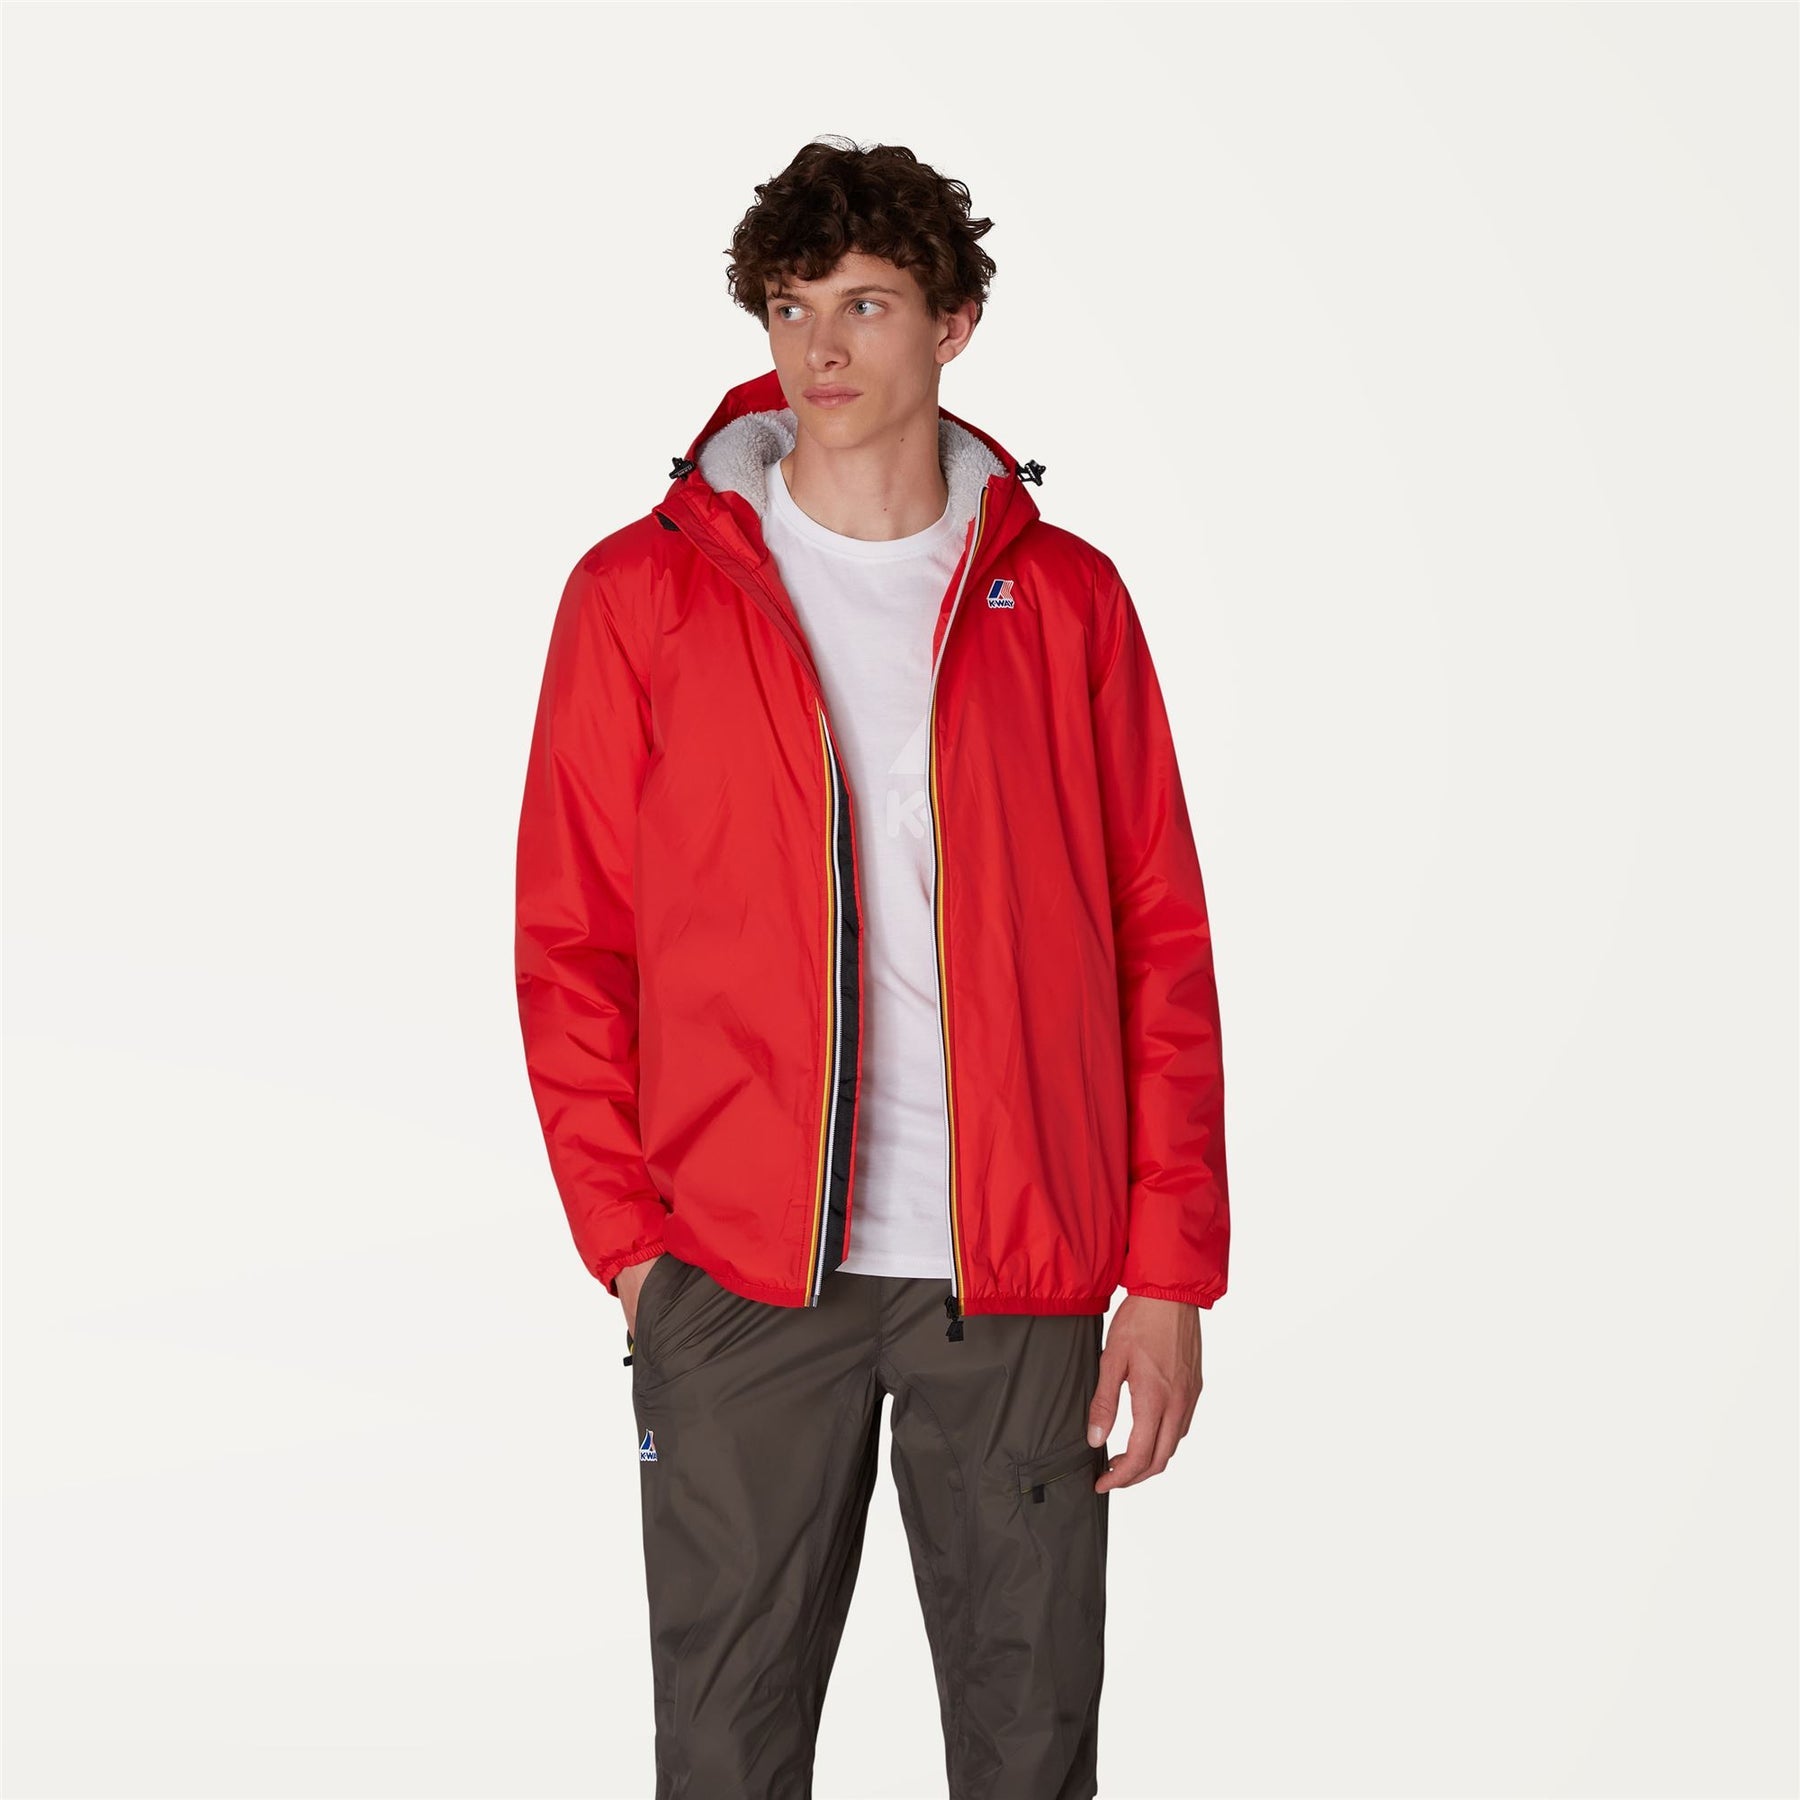 Claude Orsetto - Unisex Lined Full Zip Rain Jacket in RedClaude Orsetto - Unisex Lined Full Zip Rain Jacket in RedClaude Orsetto - Unisex Lined Full Zip Rain Jacket in Red